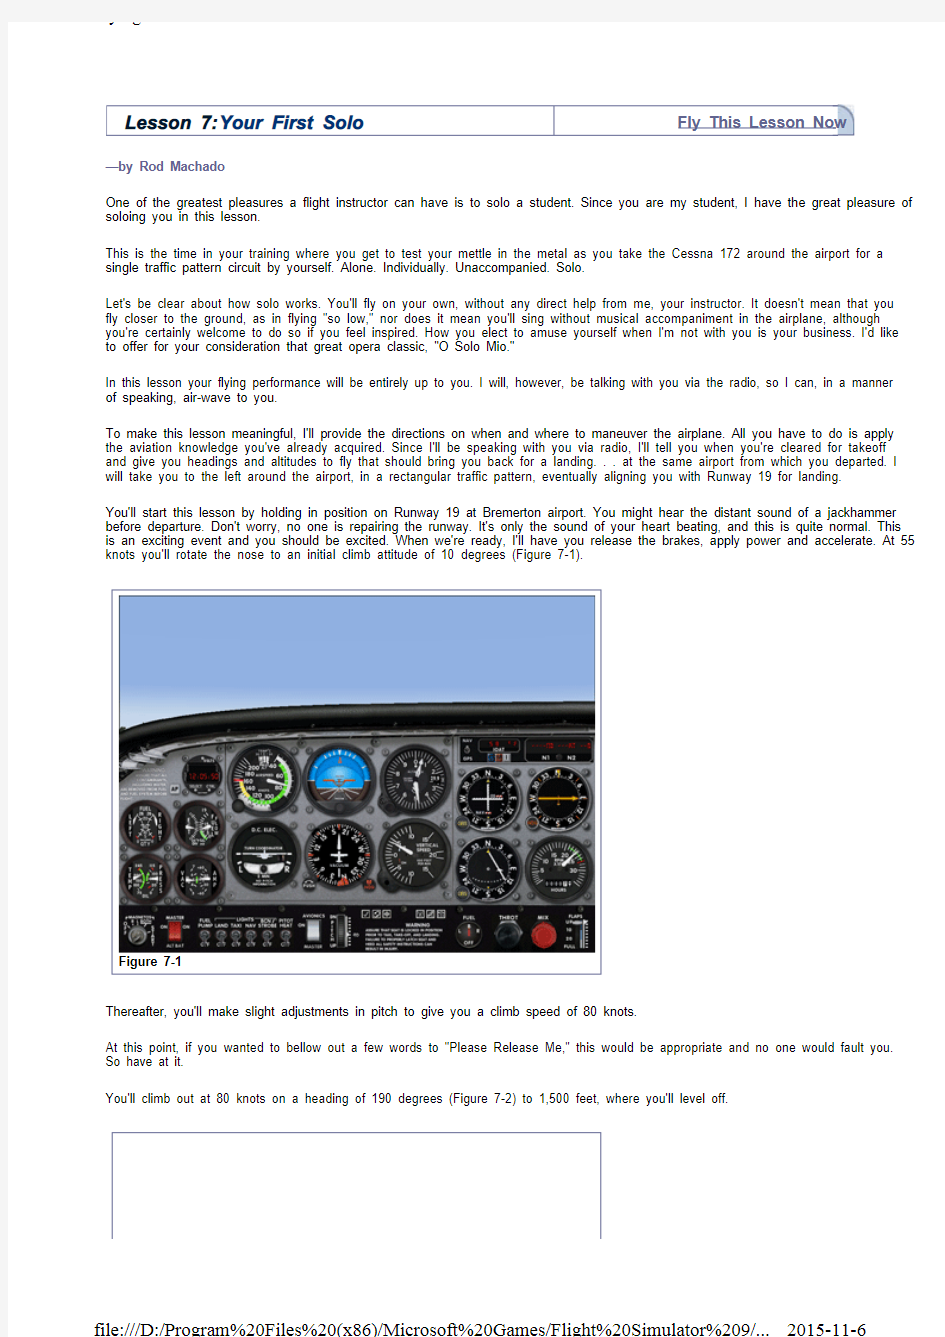 微软模拟飞行2004飞行课程(中文版)1.7. 你的首次单飞